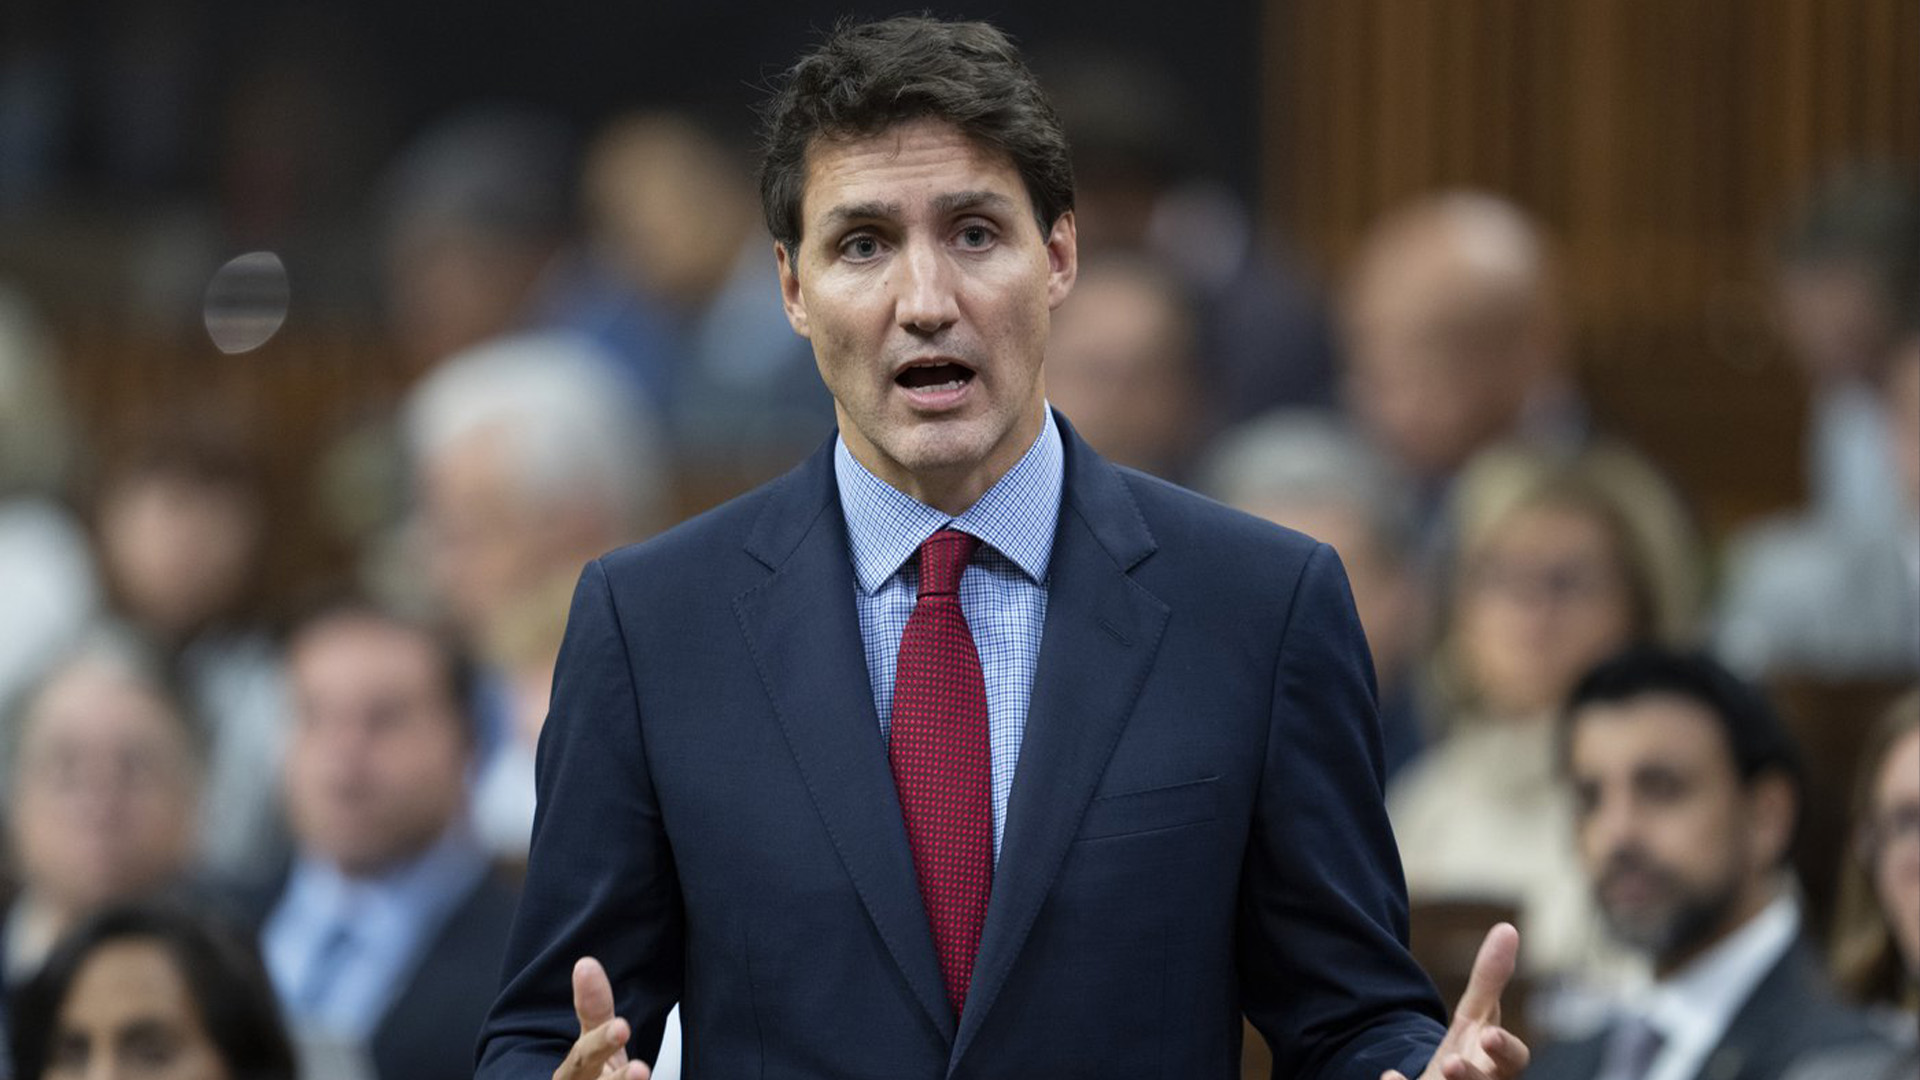 Le premier ministre Justin Trudeau affirme que «le Canada ne reconnaît pas et ne reconnaîtra jamais les résultats» des référendums organisés dans les régions occupées de l'Ukraine par la Russie.